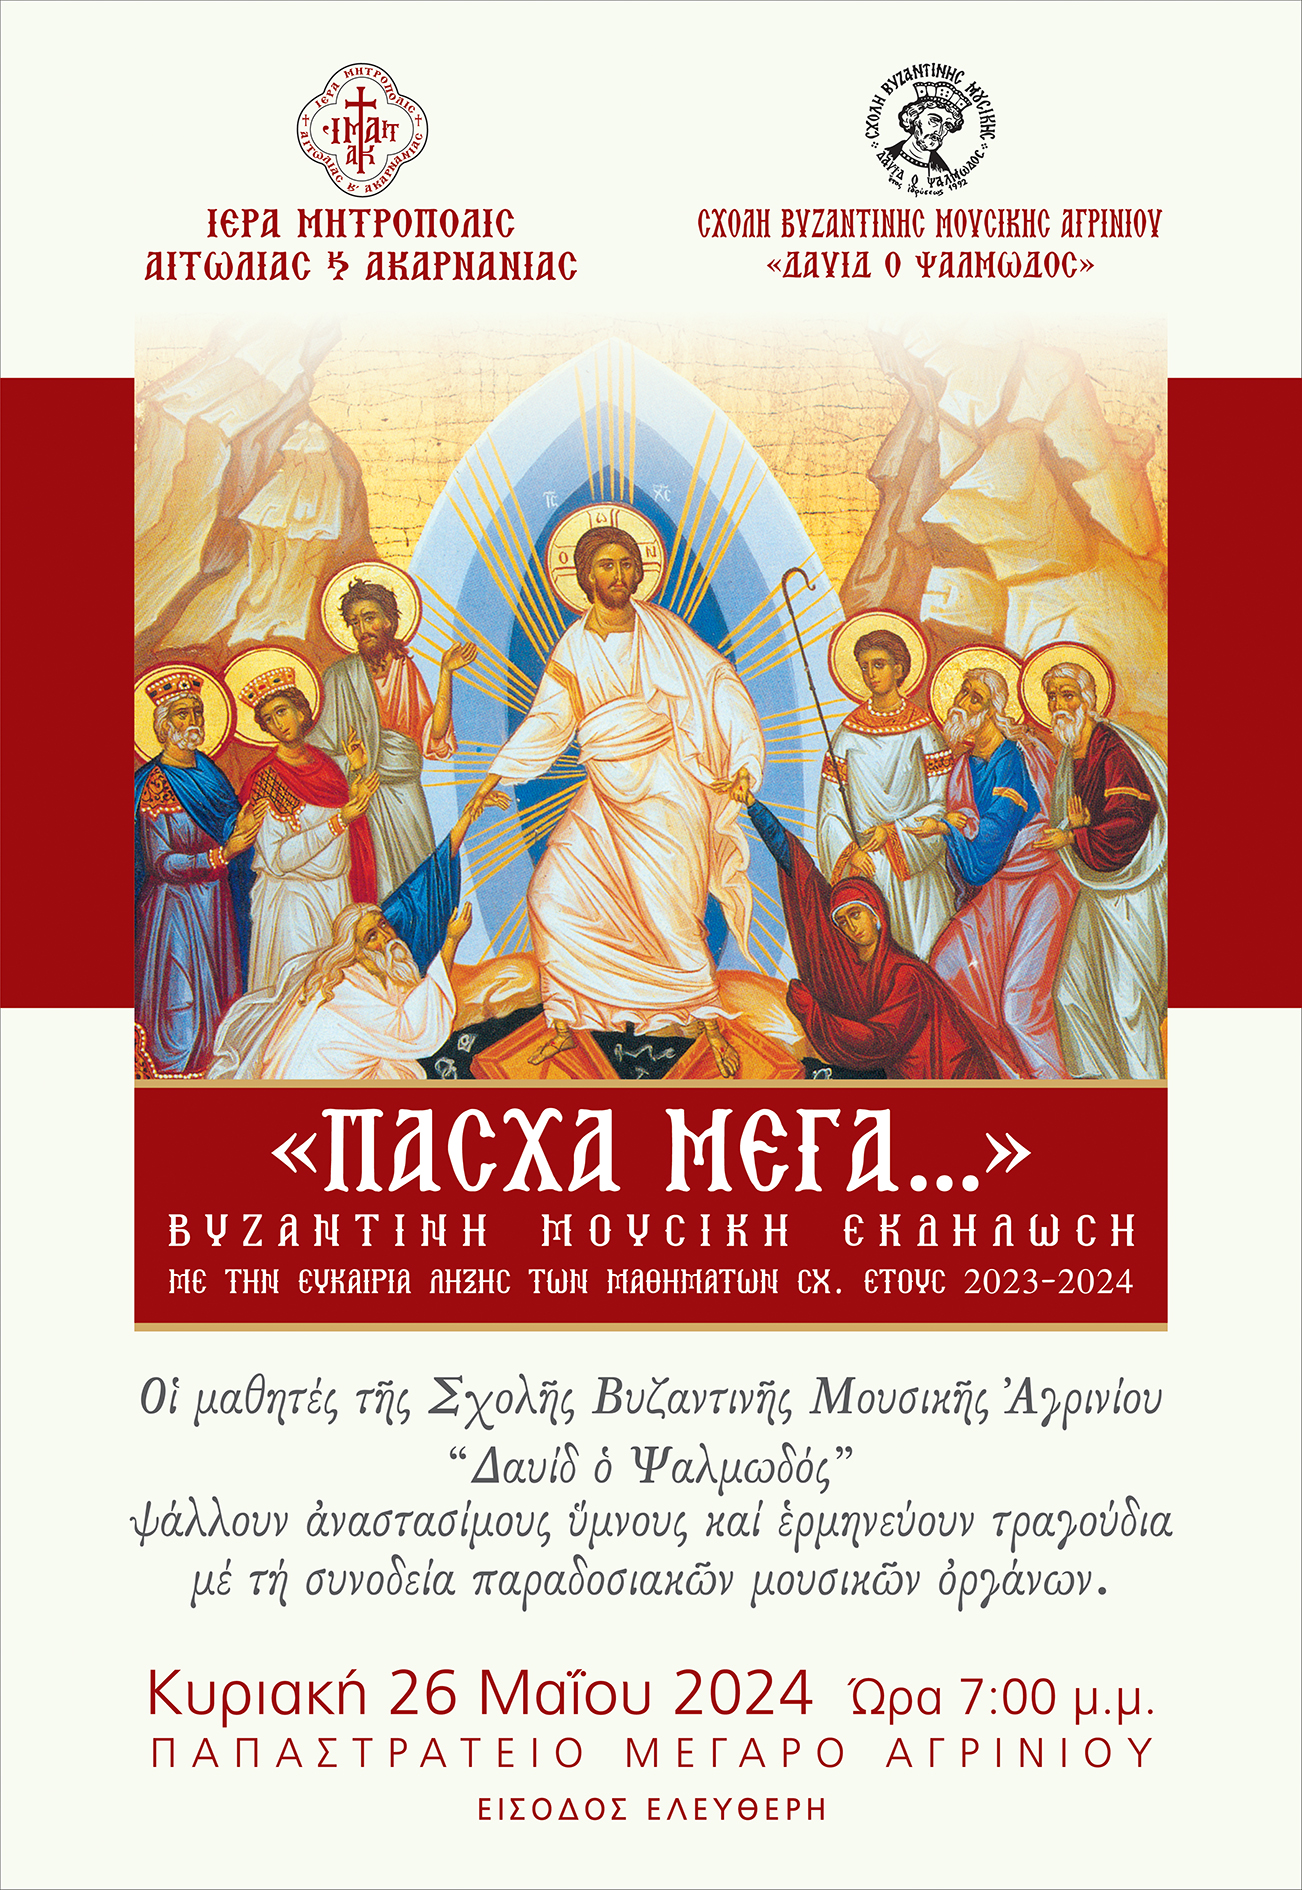 Μουσική Εκδήλωση της Σχολής Βυζαντινής Μουσικής Αγρινίου «Δαυίδ ο Ψαλμωδός» της Ιεράς Μητροπόλεως Αιτωλίας και Ακαρνανίας